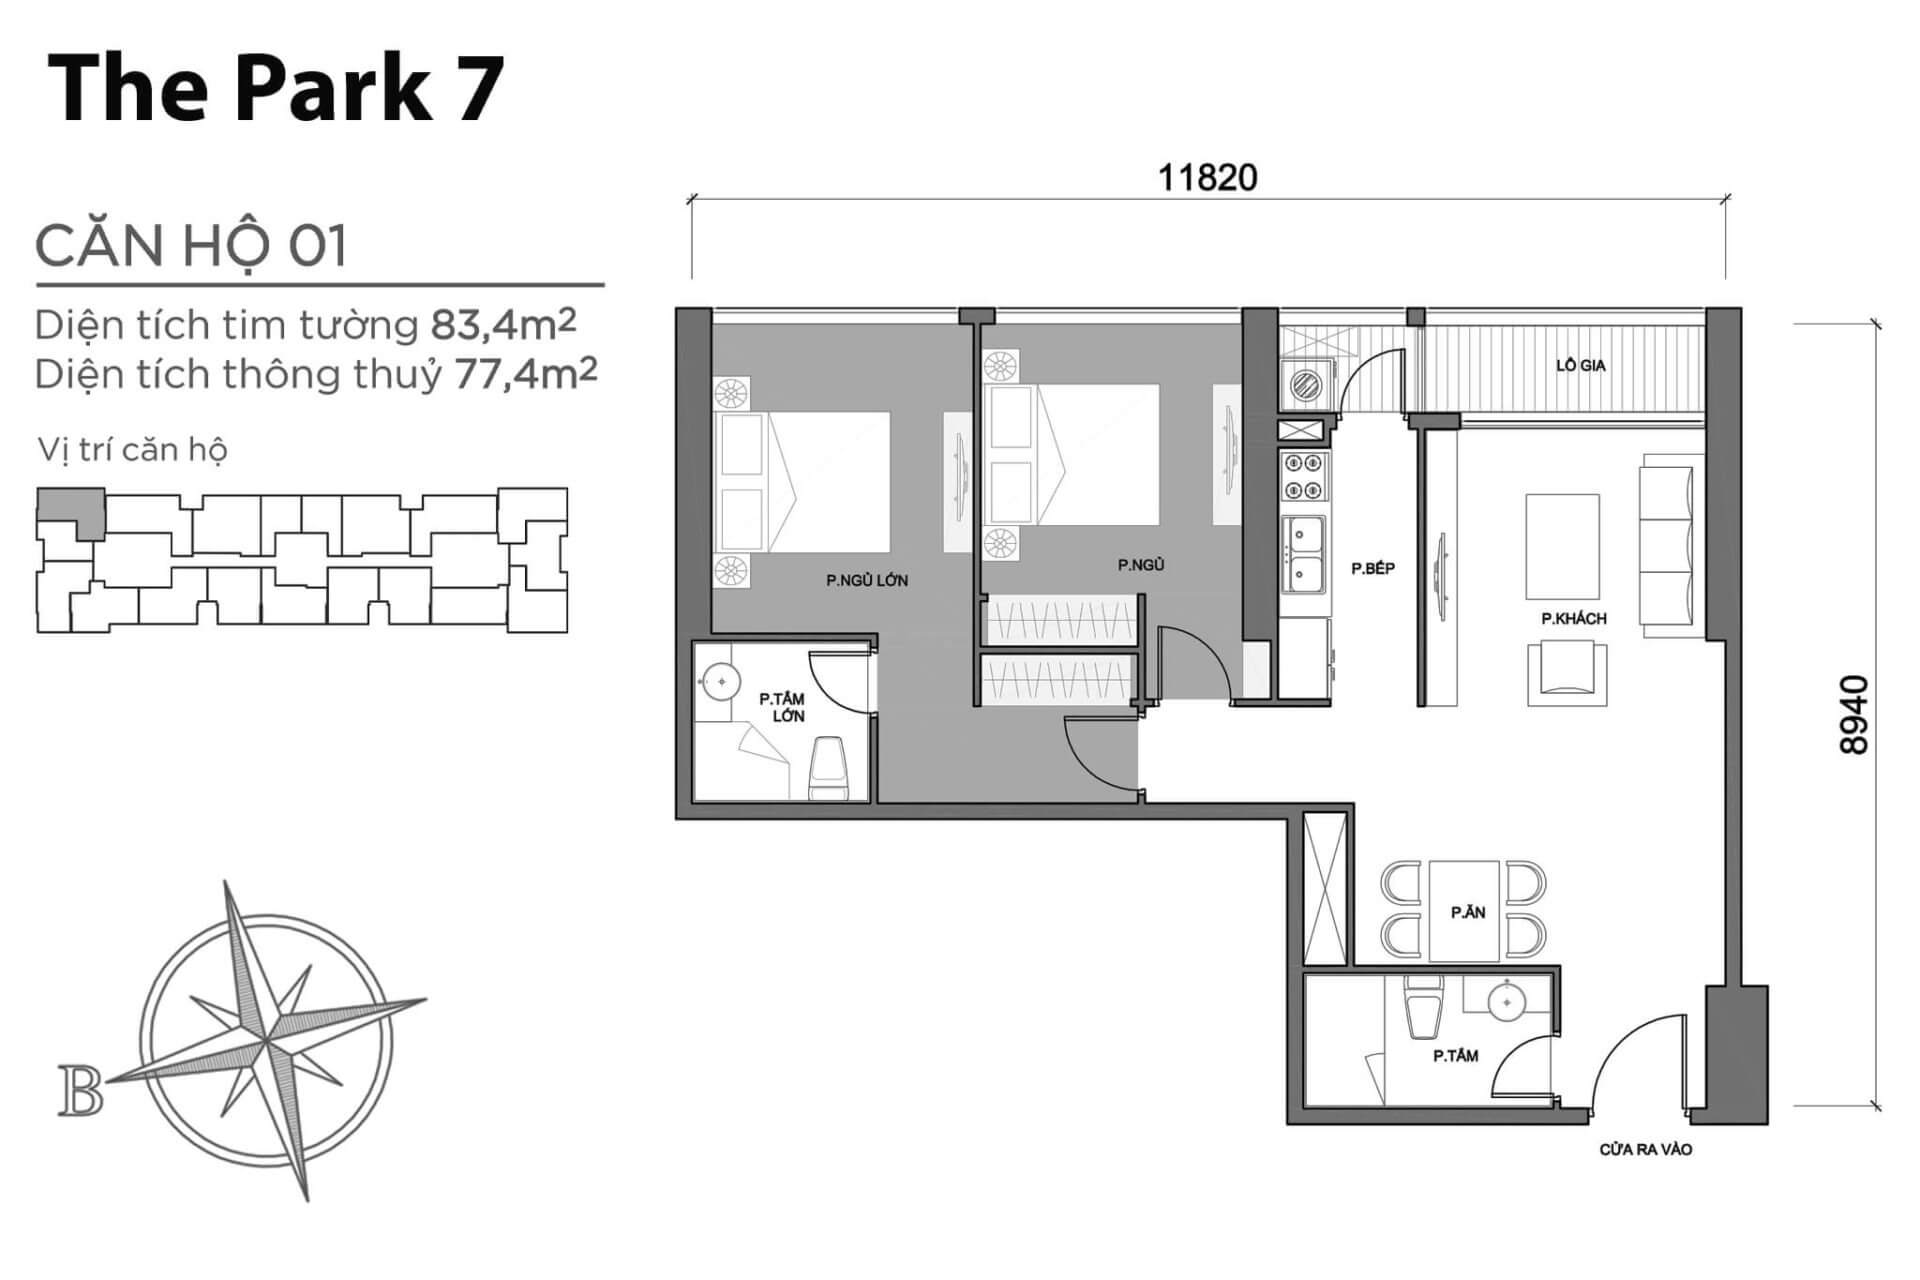 layout căn hộ số 01 tòa Park 7 P7-01